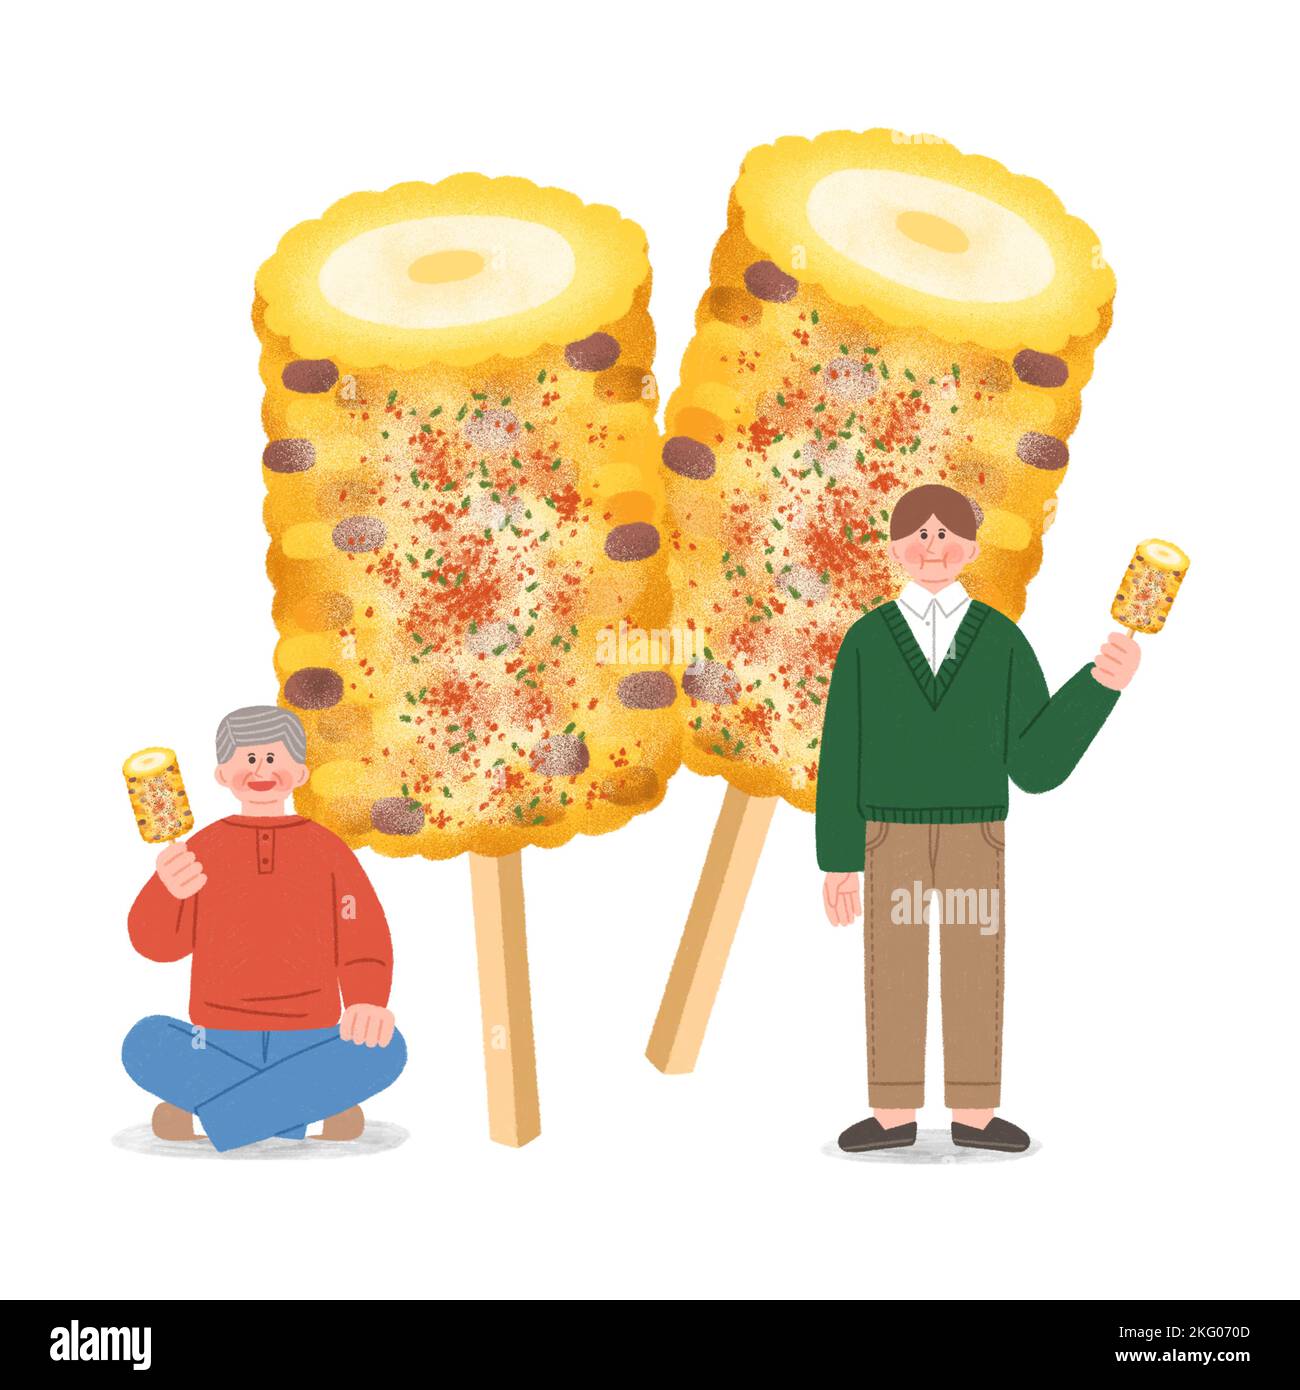 ilustración de comida callejera de invierno coreana maíz sazonado Foto de stock